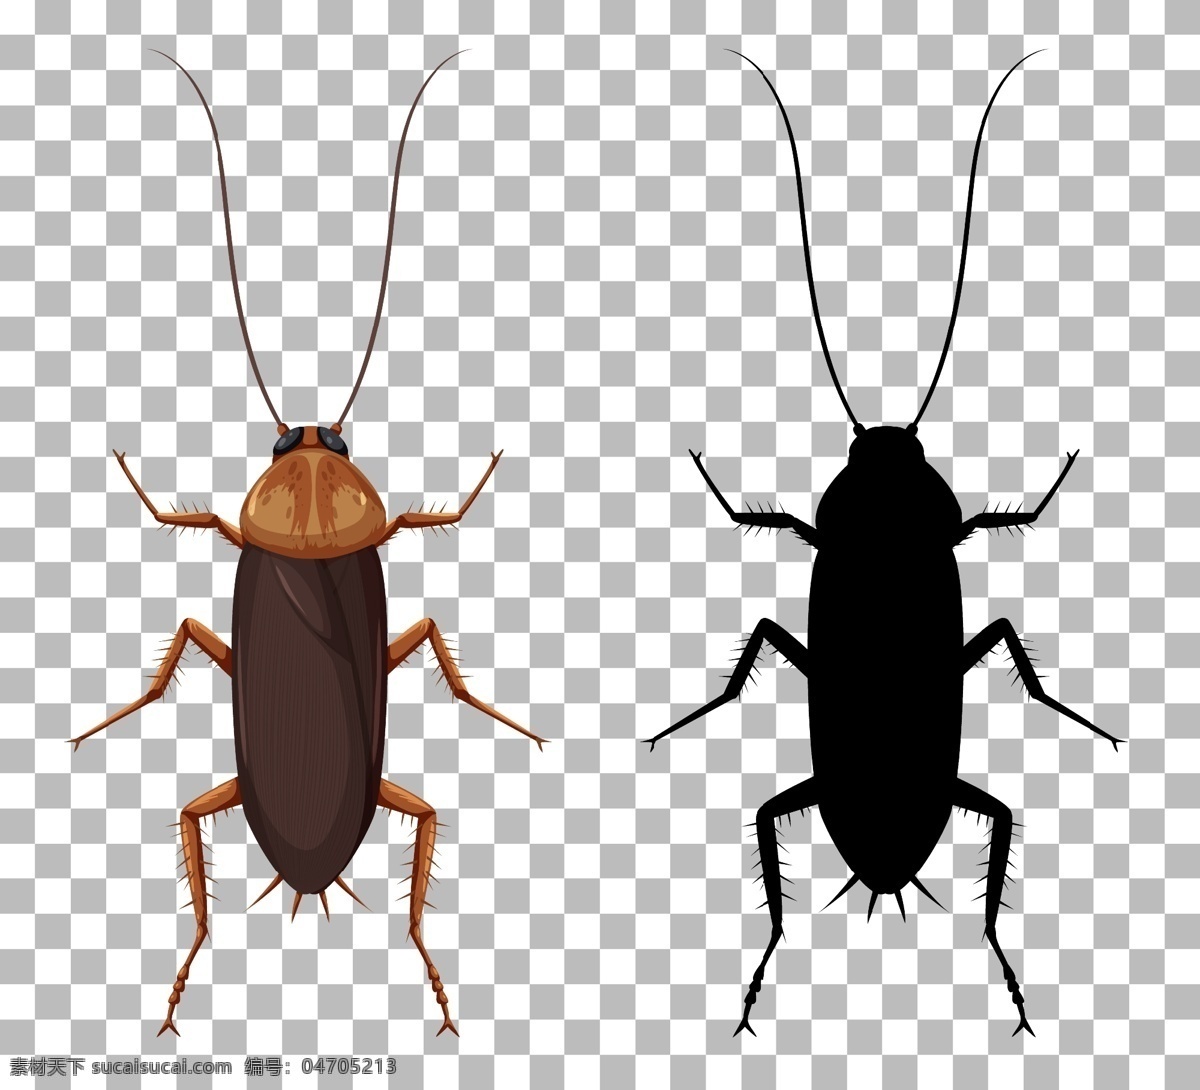 卡通昆虫图片 卡通昆虫 生命周期 进化 退化 演变 虫子 发展 生物 学科 生物世界 昆虫